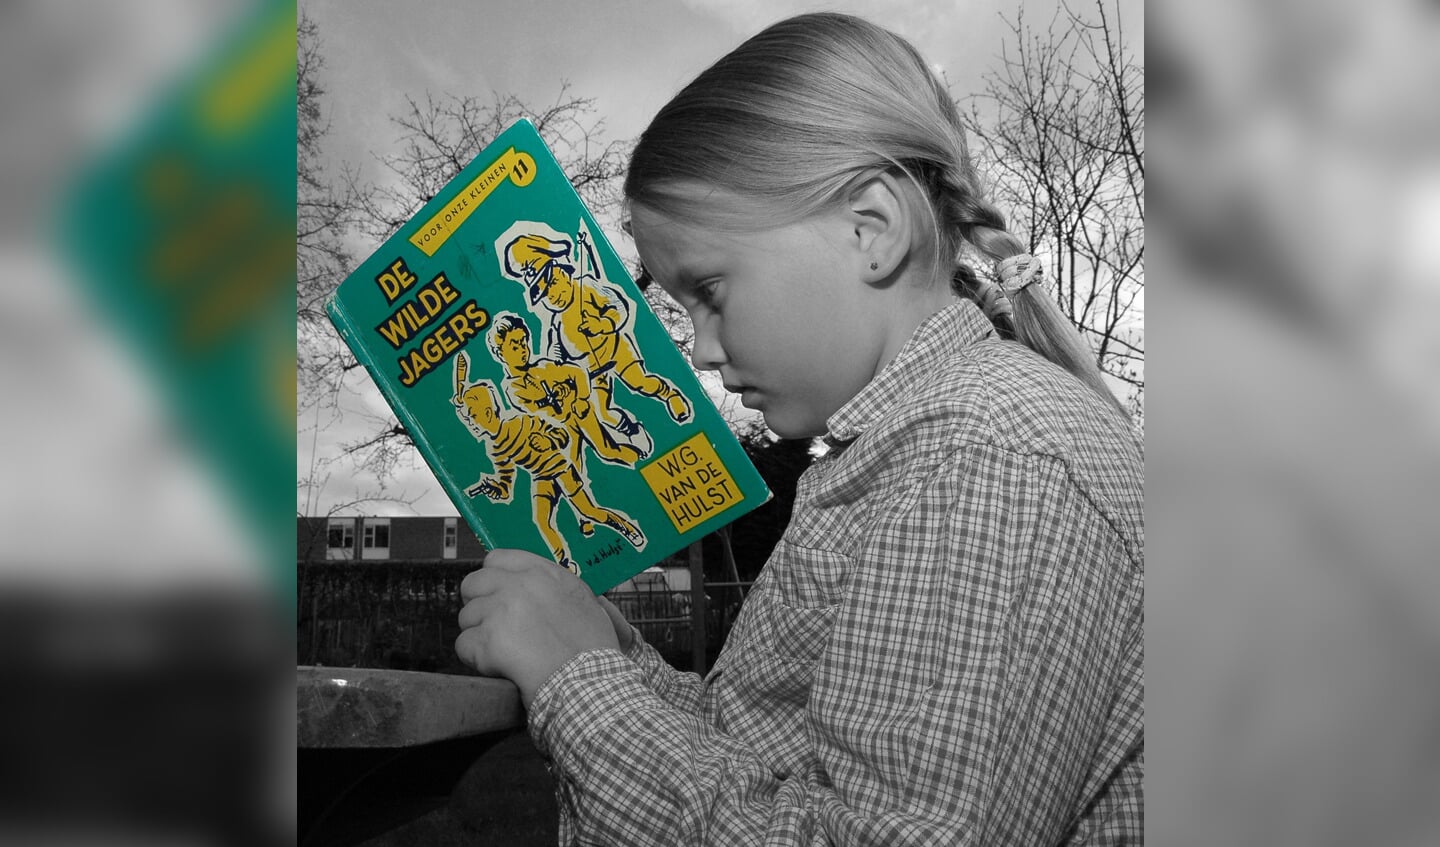 Hele volksstammen zijn opgegroeid met de kinderboeken van Van der Hulst. 